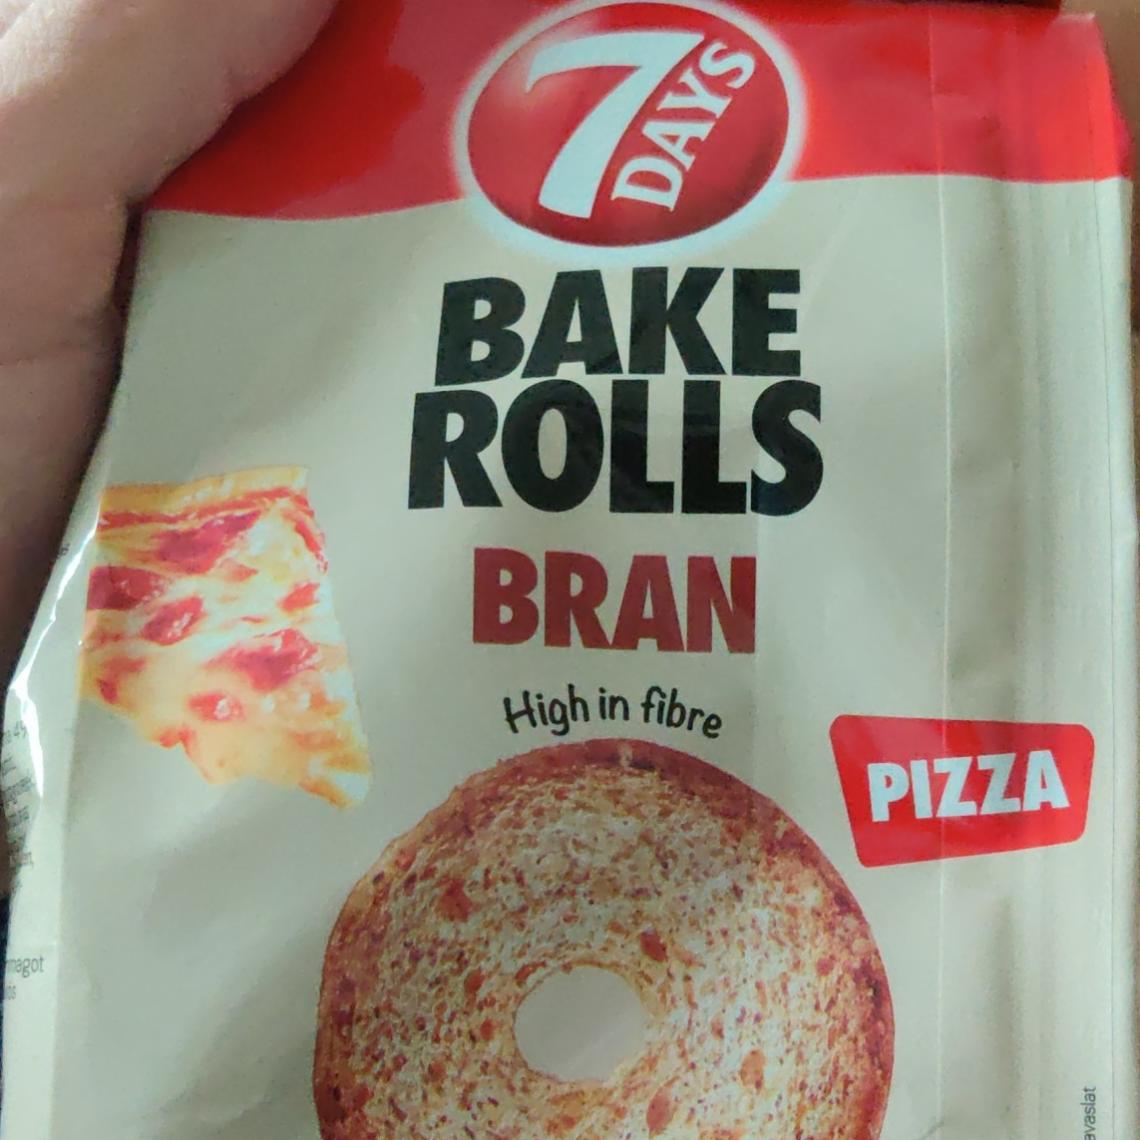 Zdjęcia - bake rolls bran pizza 7Days